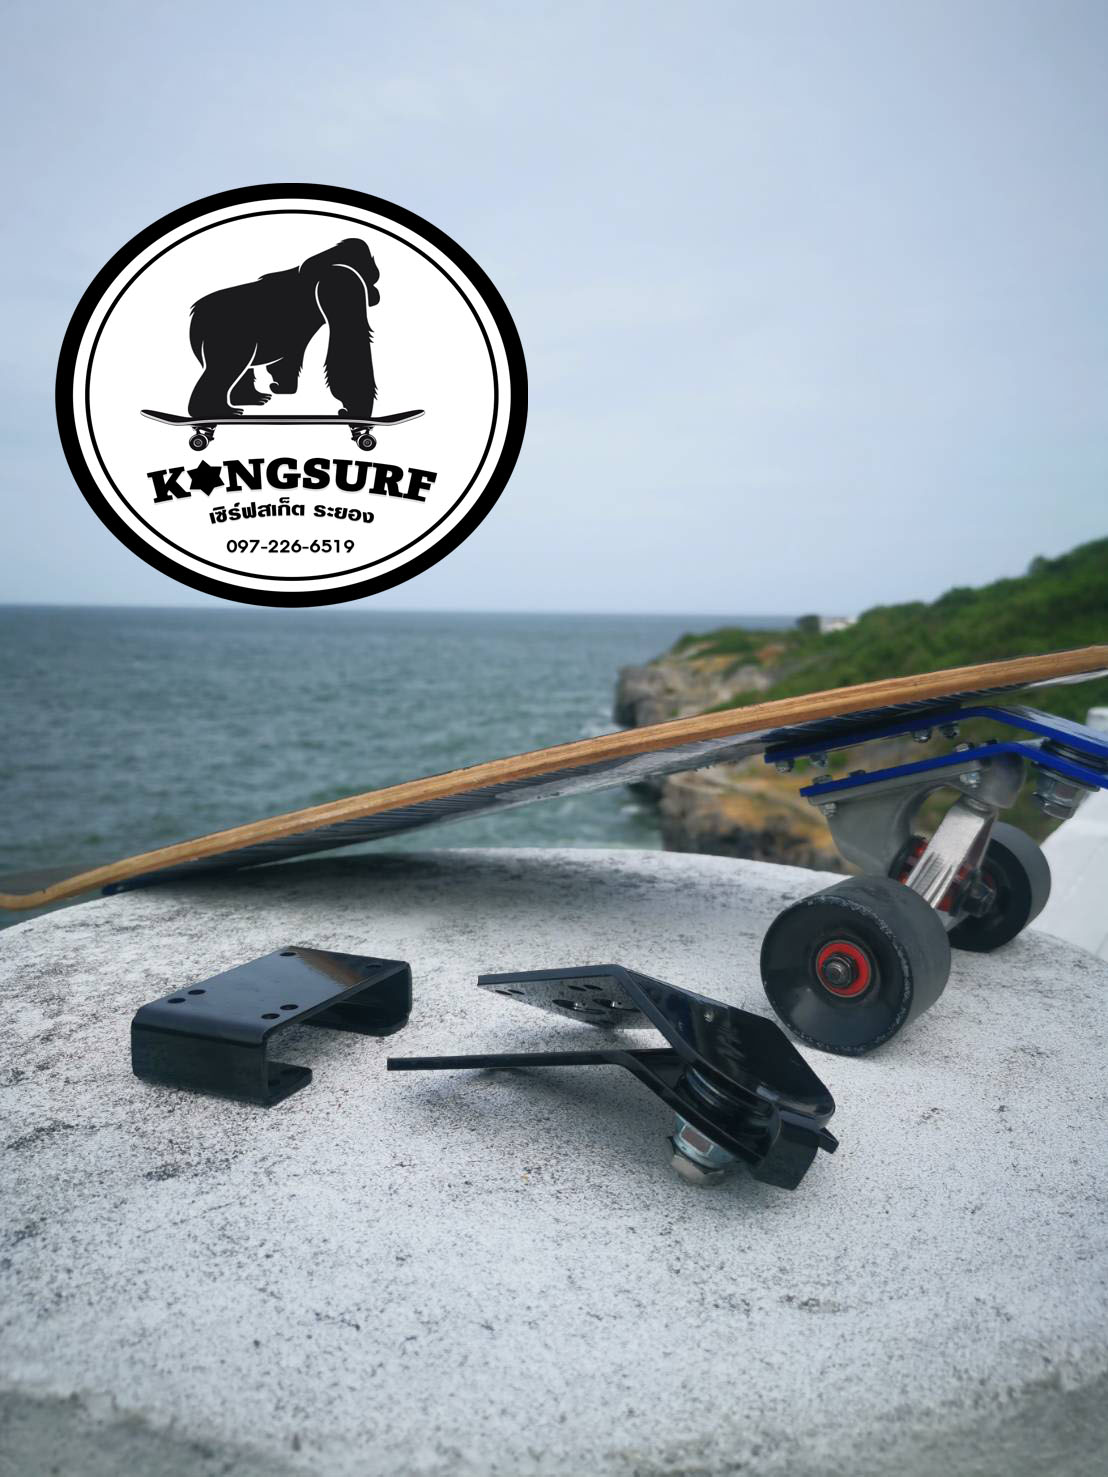 Surf Adapter  สินค้าคนไทยทำ เปลี่ยนสเก็ตธรรมดา ให้กลายเป็น  เซิร์ฟสเก็ต Surfskate